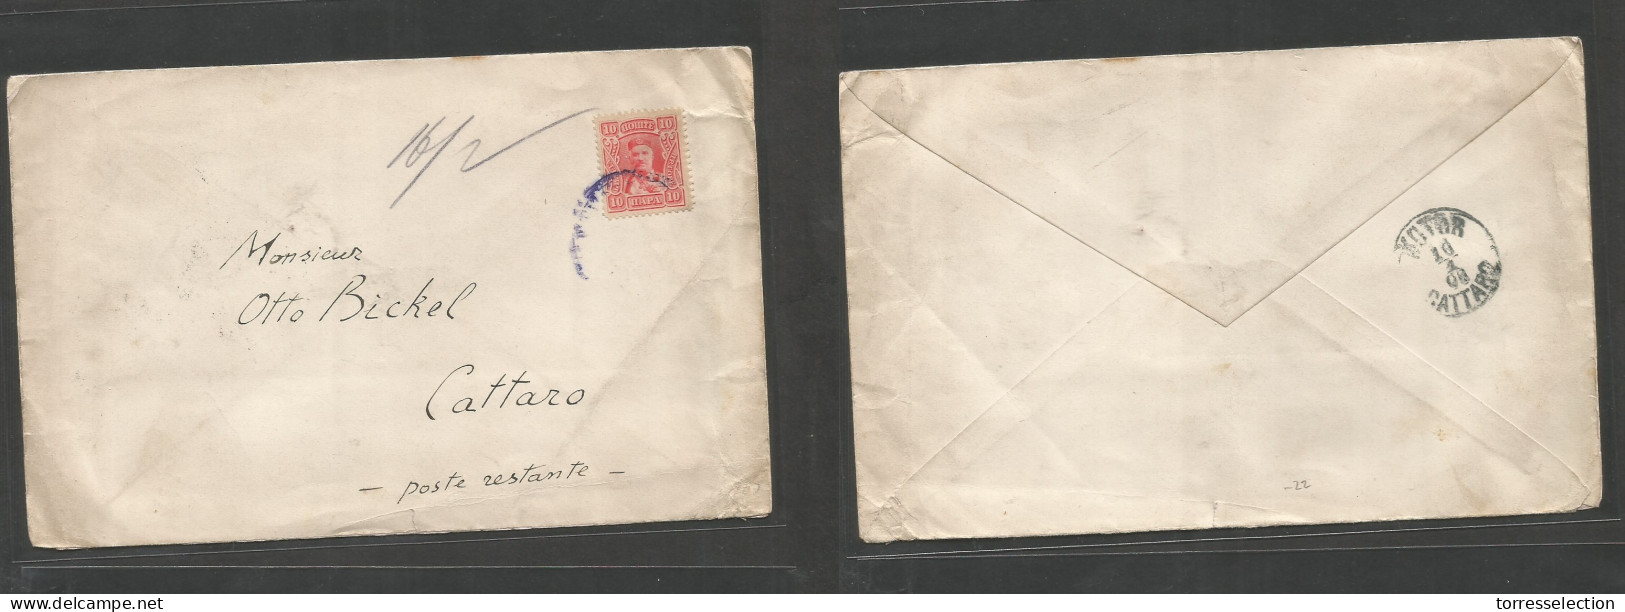 SERBIA. 1908. Fkd Env 10p Rosend, Blue Cds. Usage To Kotor / Cattaro, Montenegro (16 Jan) Scarce Stamp On Cover. - Serbie